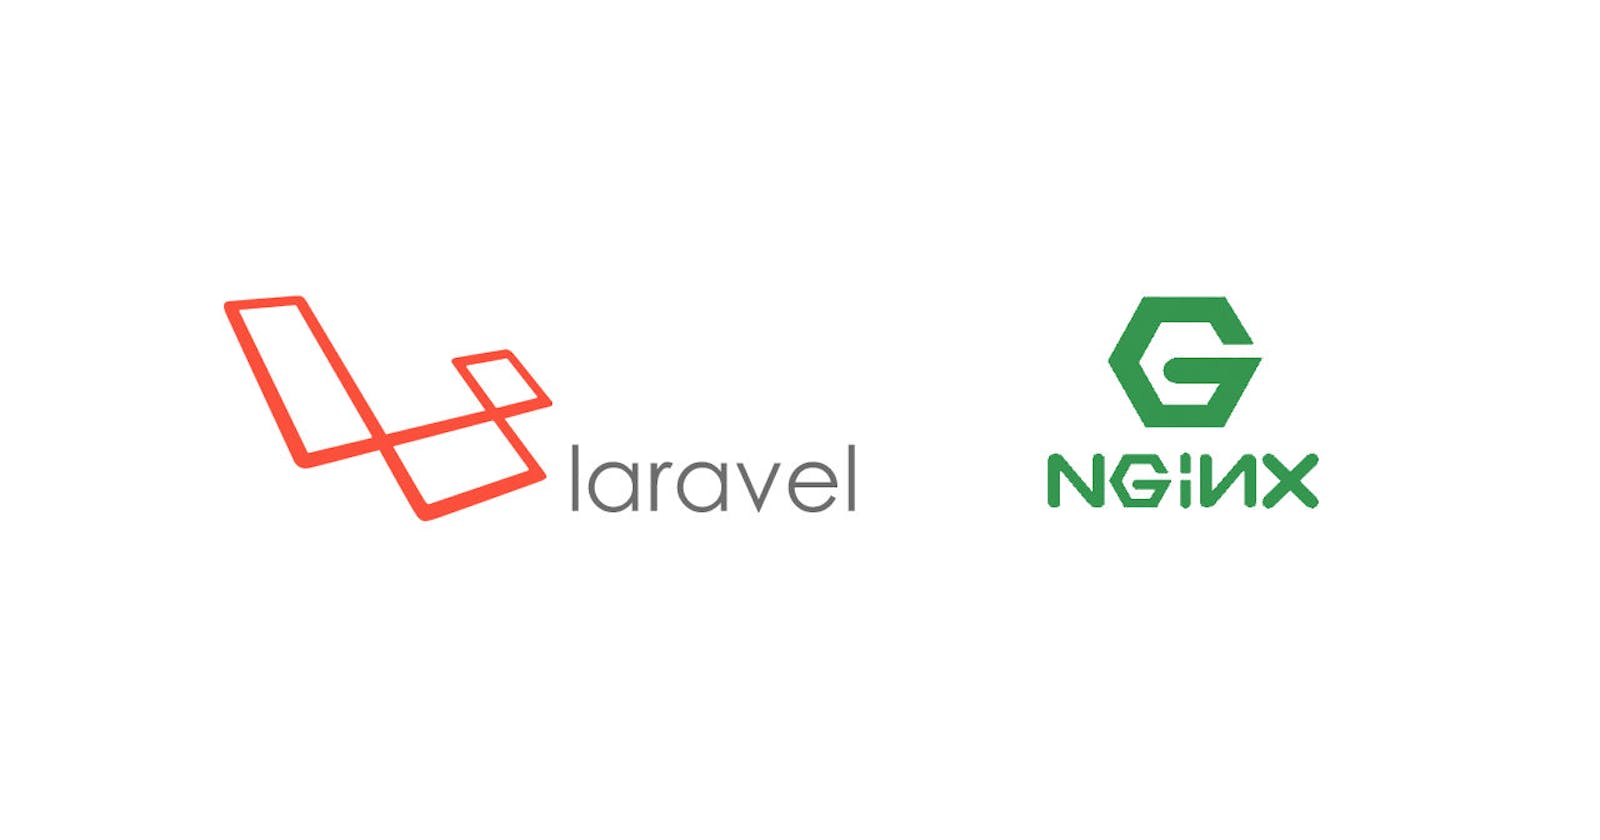 How to Install Laravel on Ubuntu 20.04 with Nginx